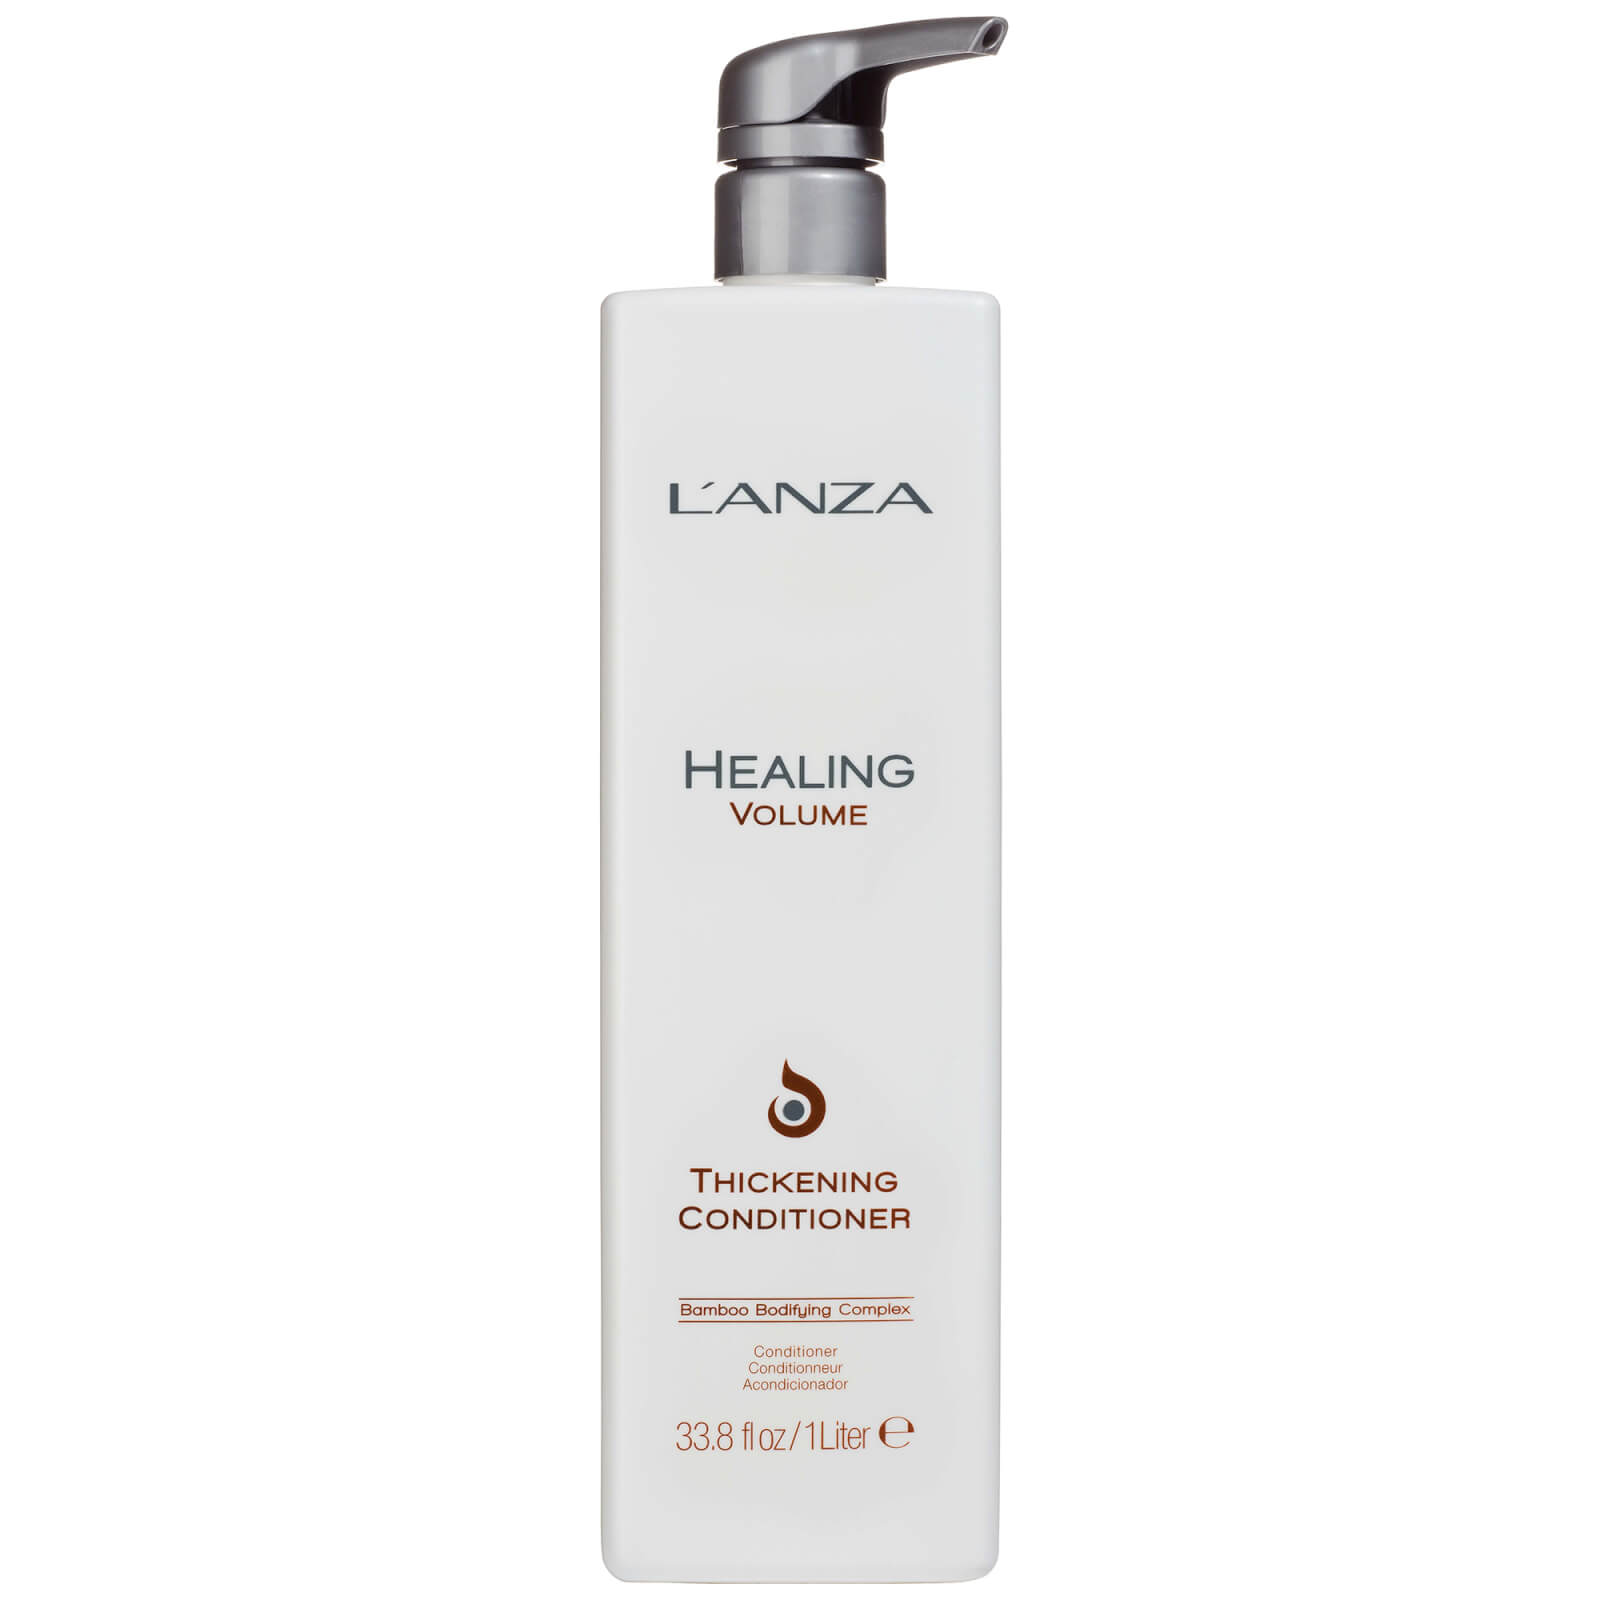 LAnza Healing Volume Thickening Conditioner (1000ml) - (Worth PS101.00)